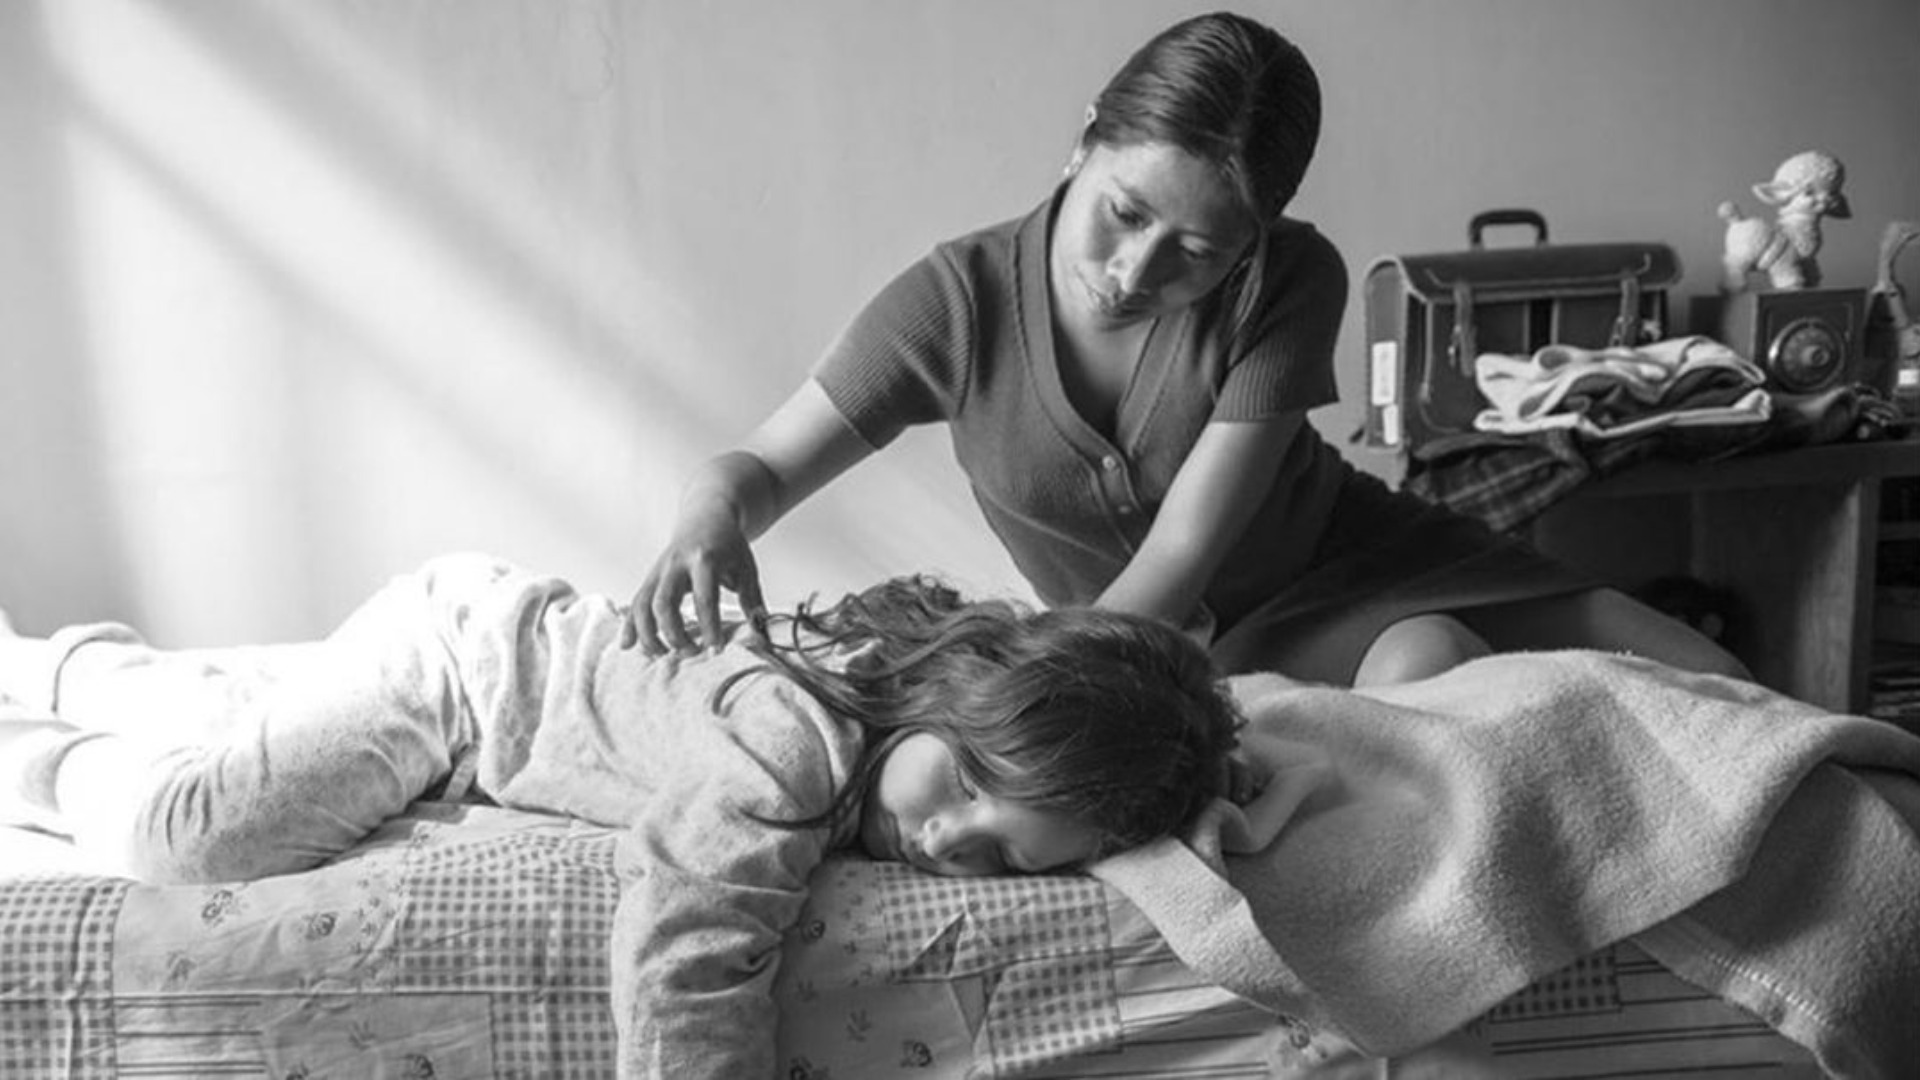 Trabajadoras del hogar: 5 películas que visibilizan su situación